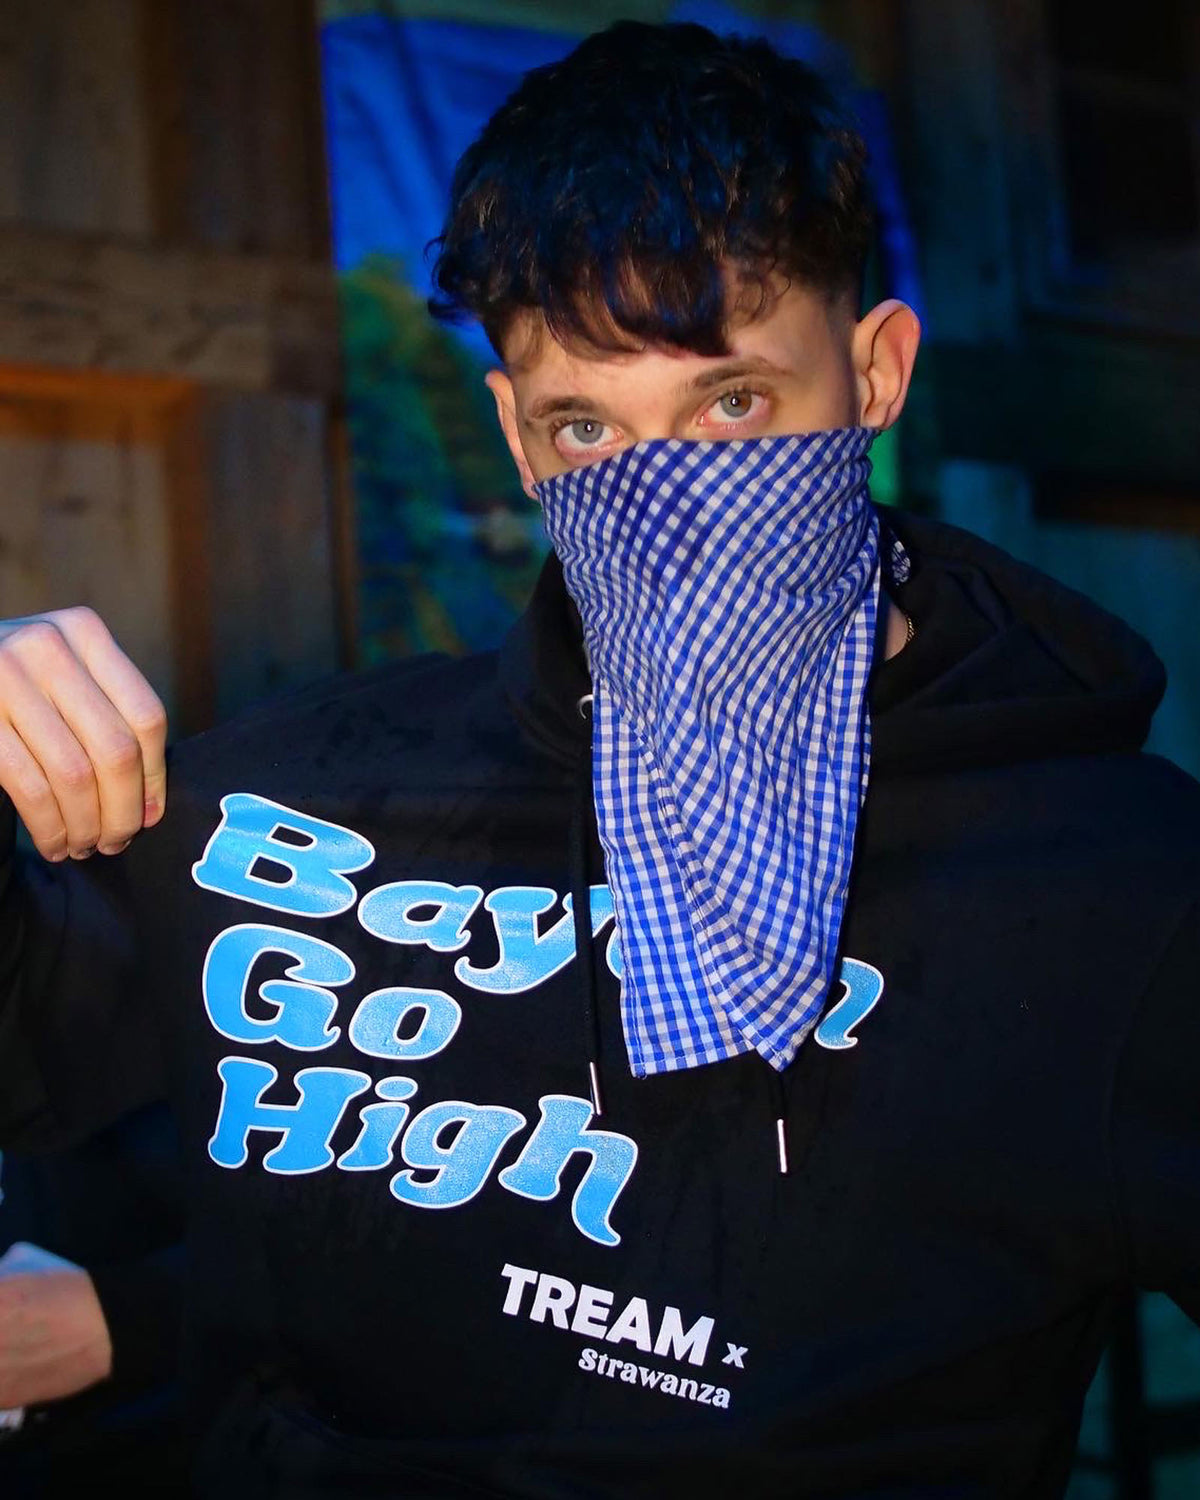 TREAM trägt einen schwarzen Hoodie mit einem "Bayern Go High" Schriftzug in der Farbe hellblau auf der Brust in Kooperation mit Strawanza.